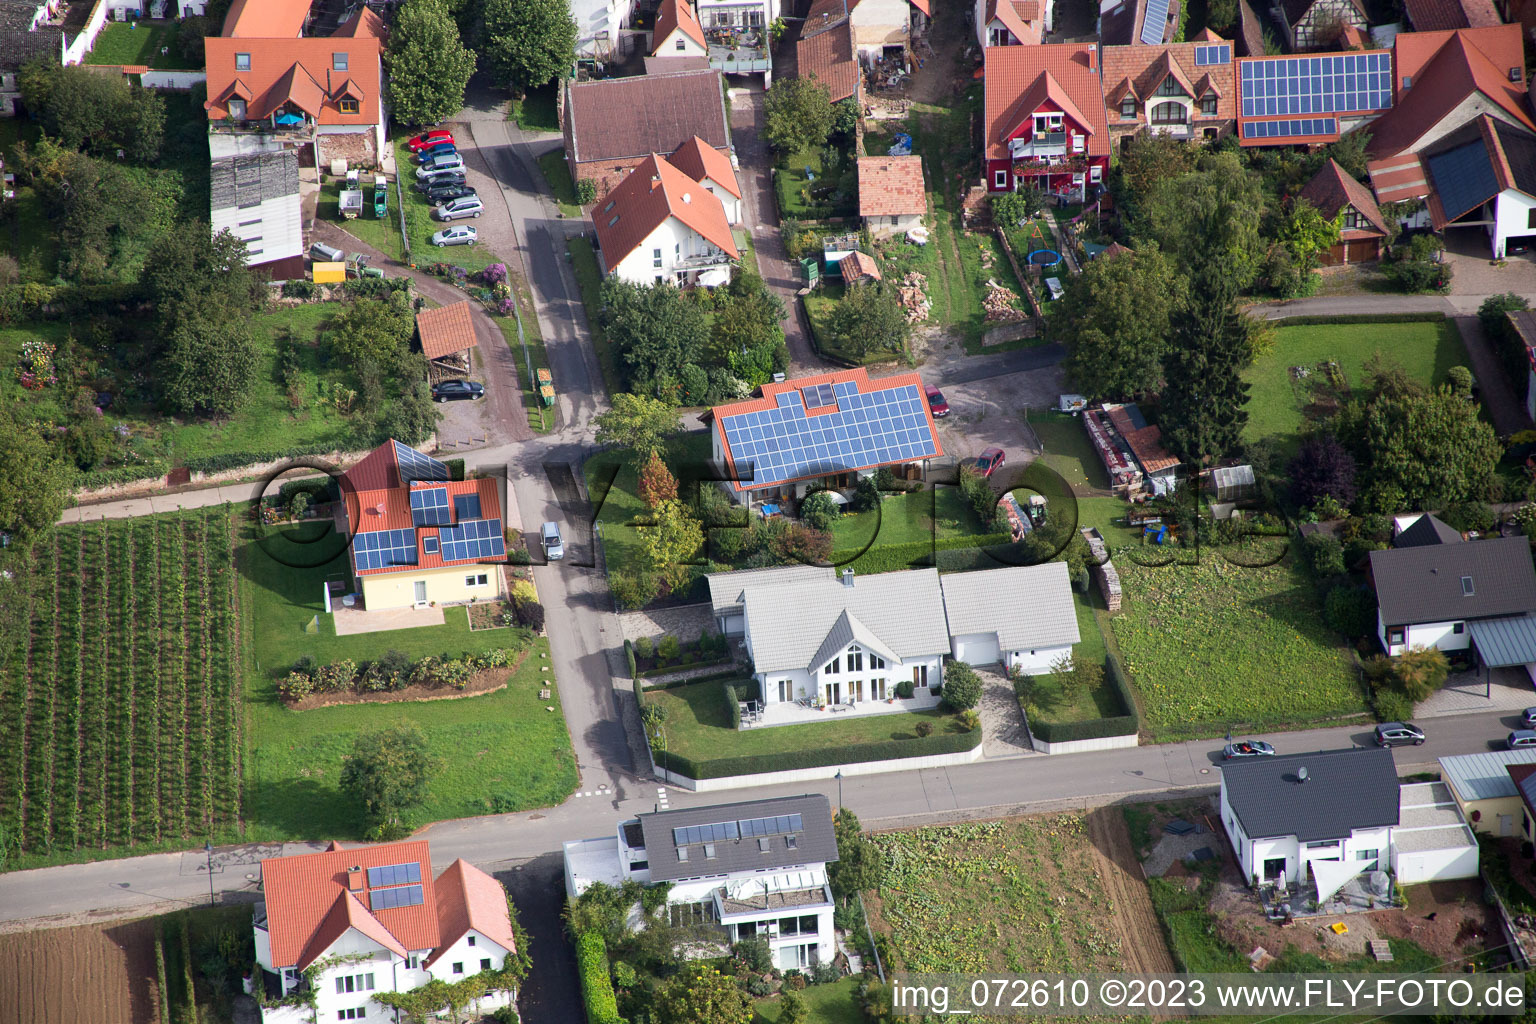 District Heuchelheim in Heuchelheim-Klingen in the state Rhineland-Palatinate, Germany viewn from the air